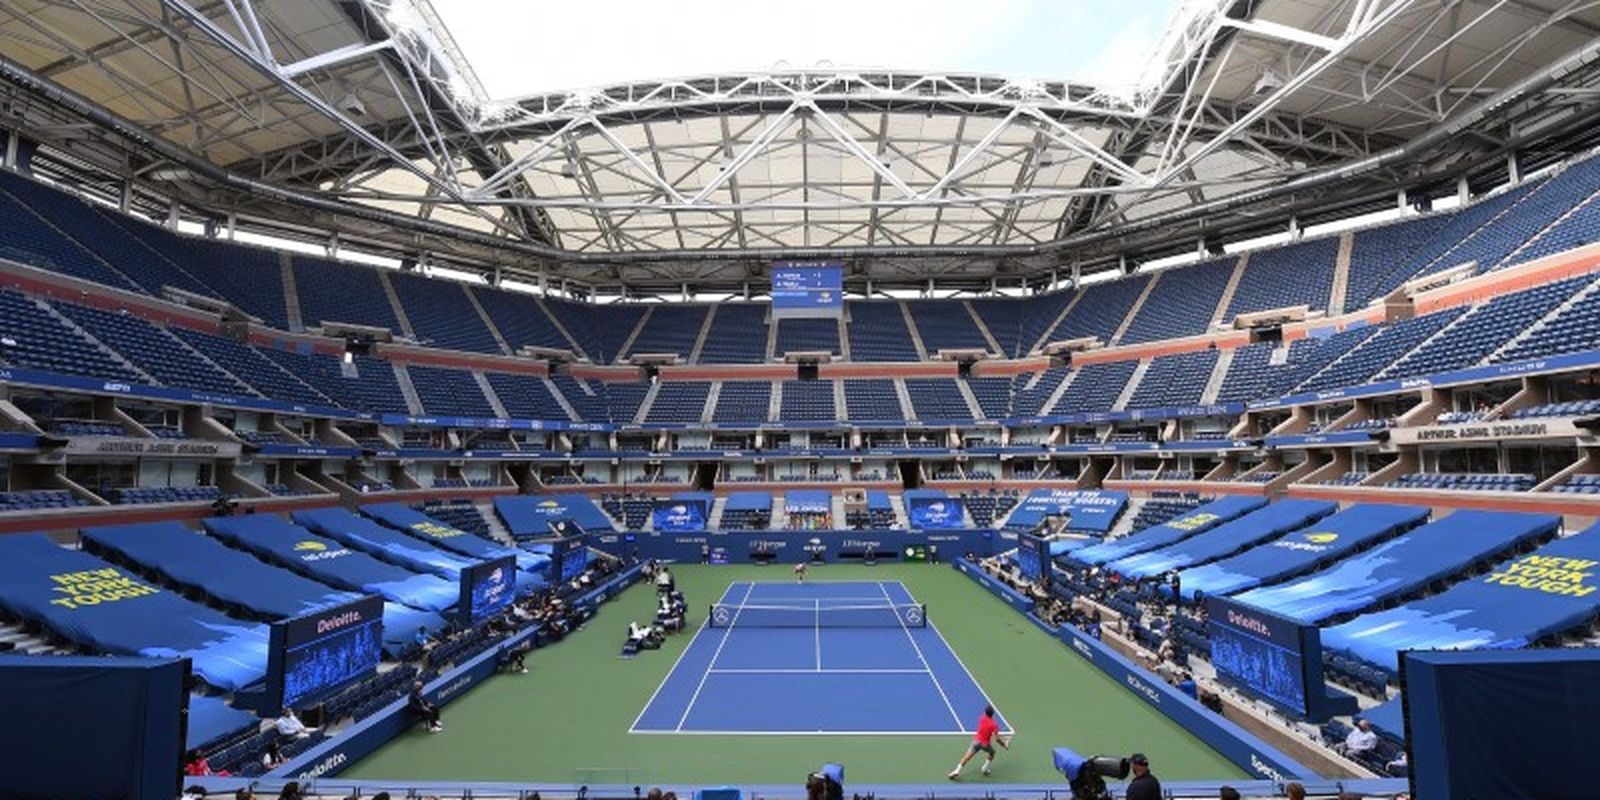 Rio Open: conheça as tecnologias que mudaram as partidas de tênis